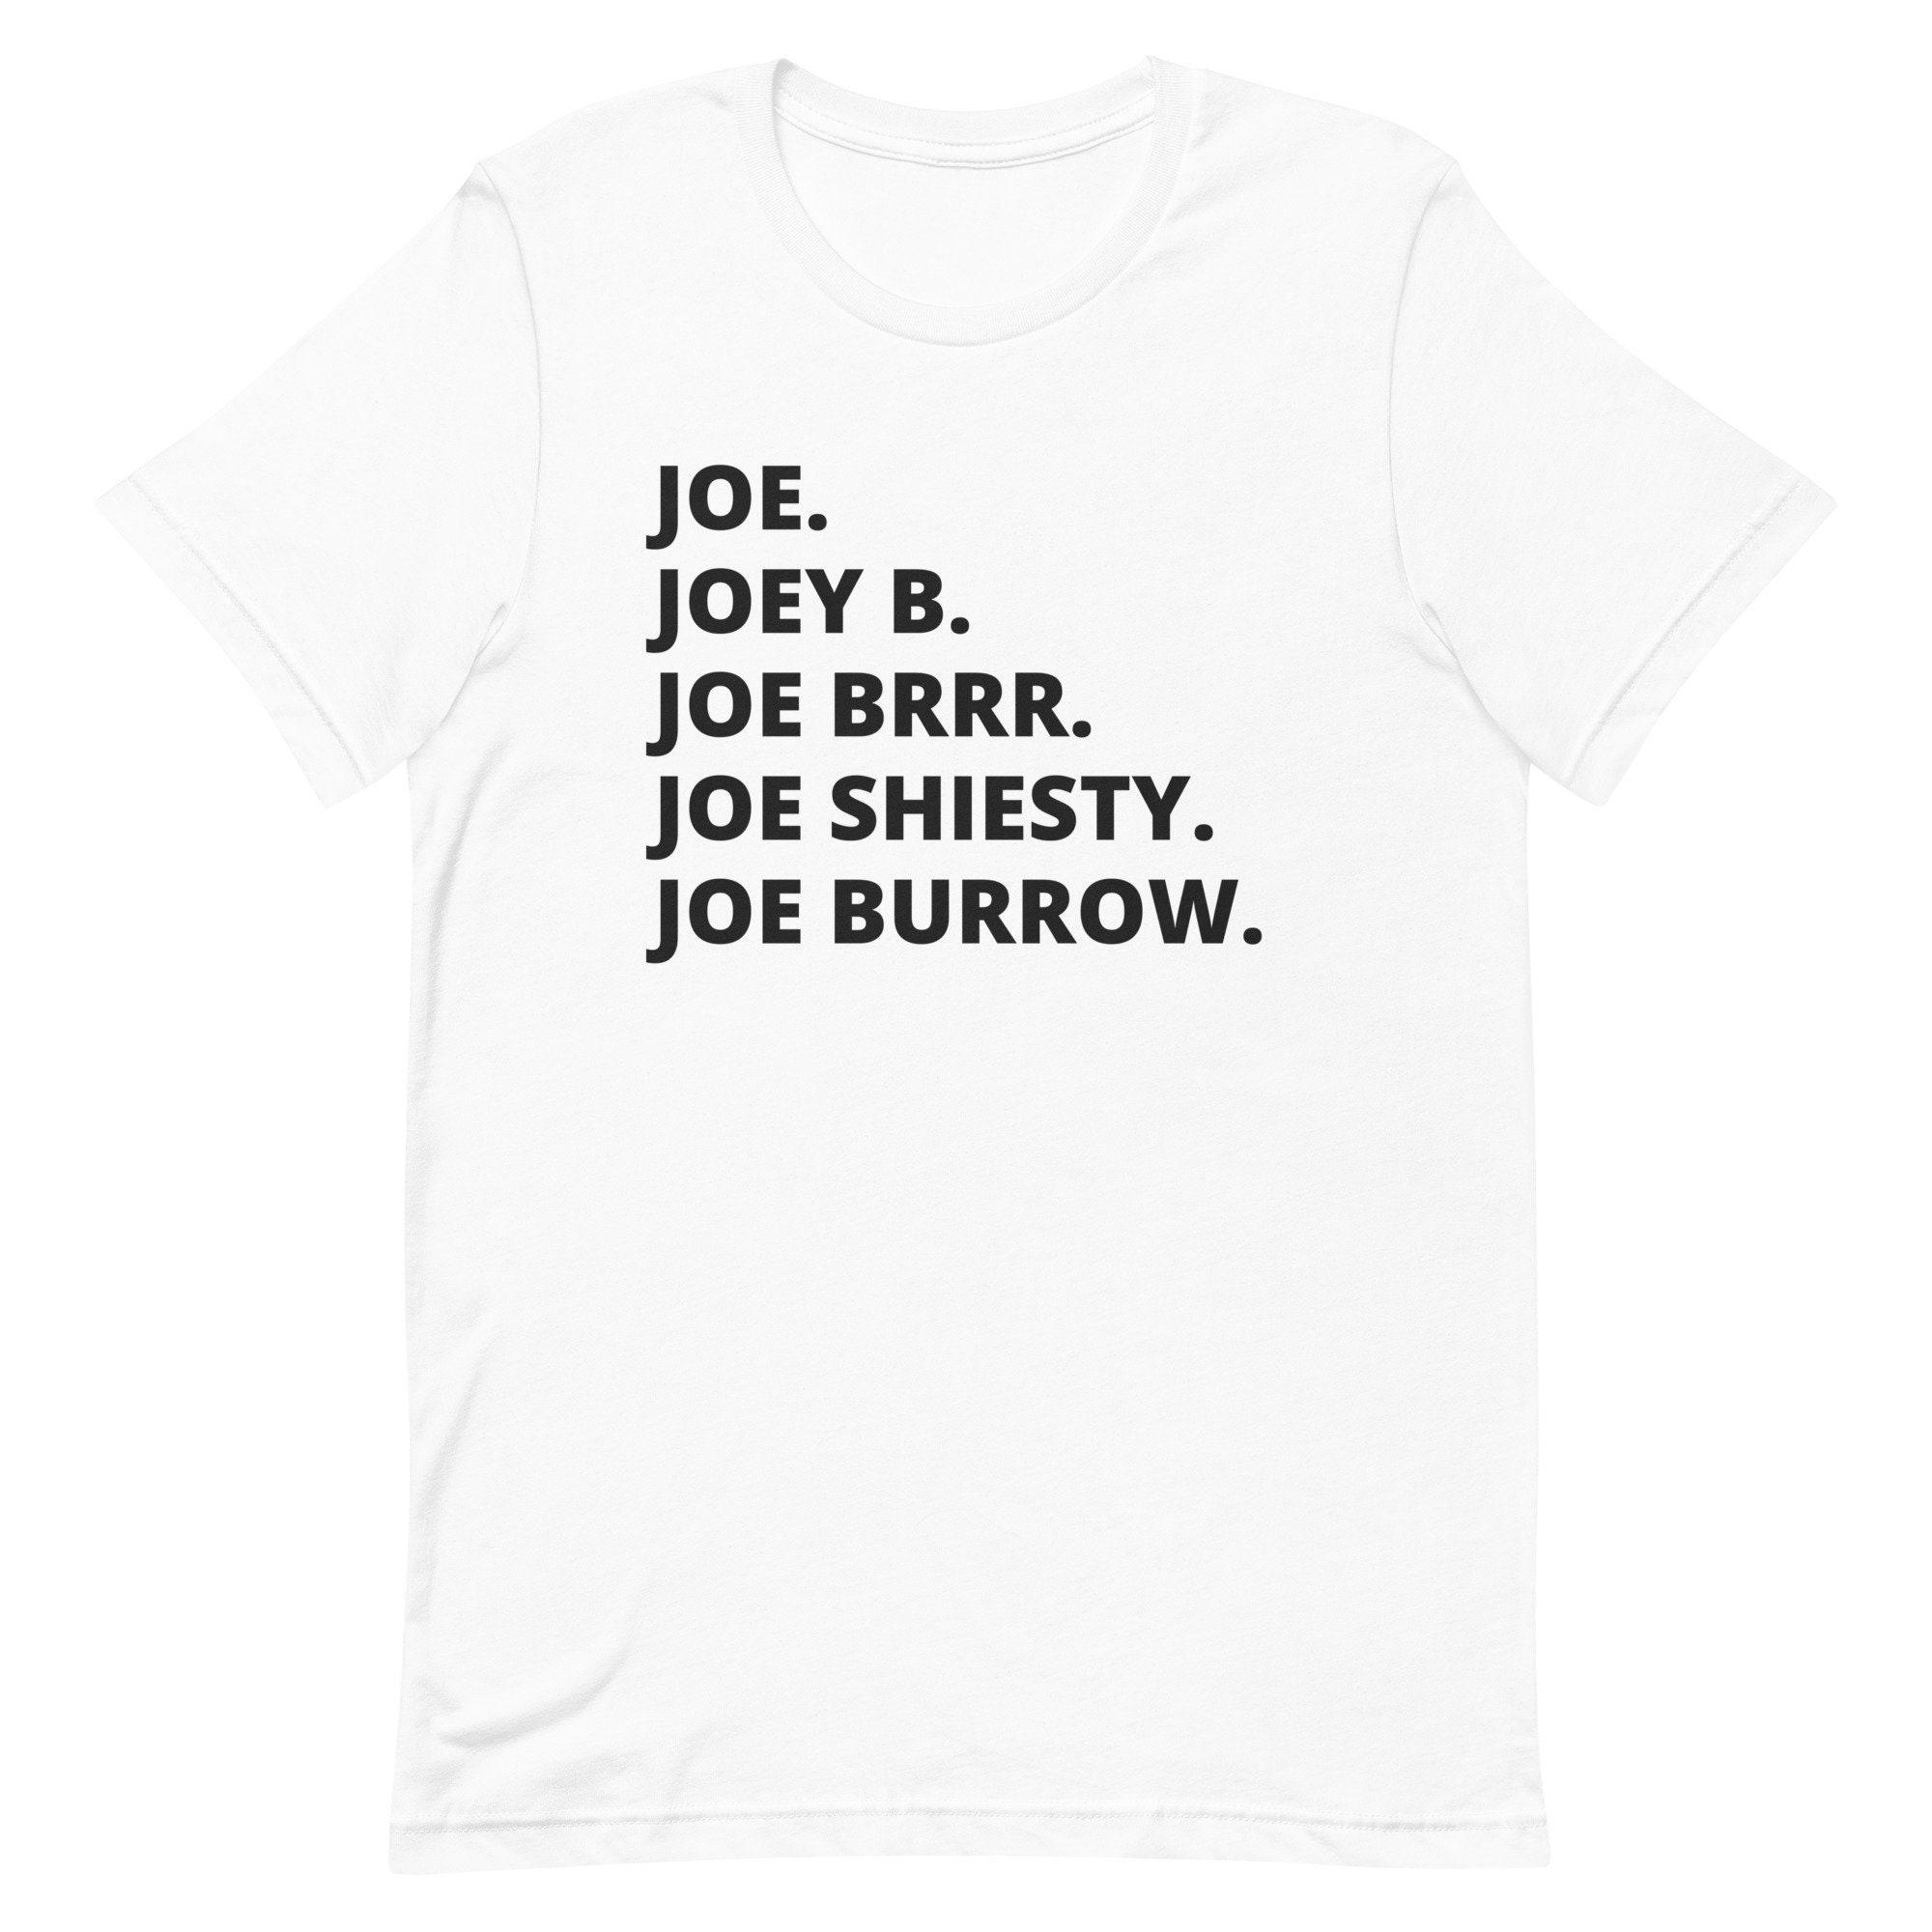 Joe Burrow brrr Tee Shirt Joe Burrow Shirt 